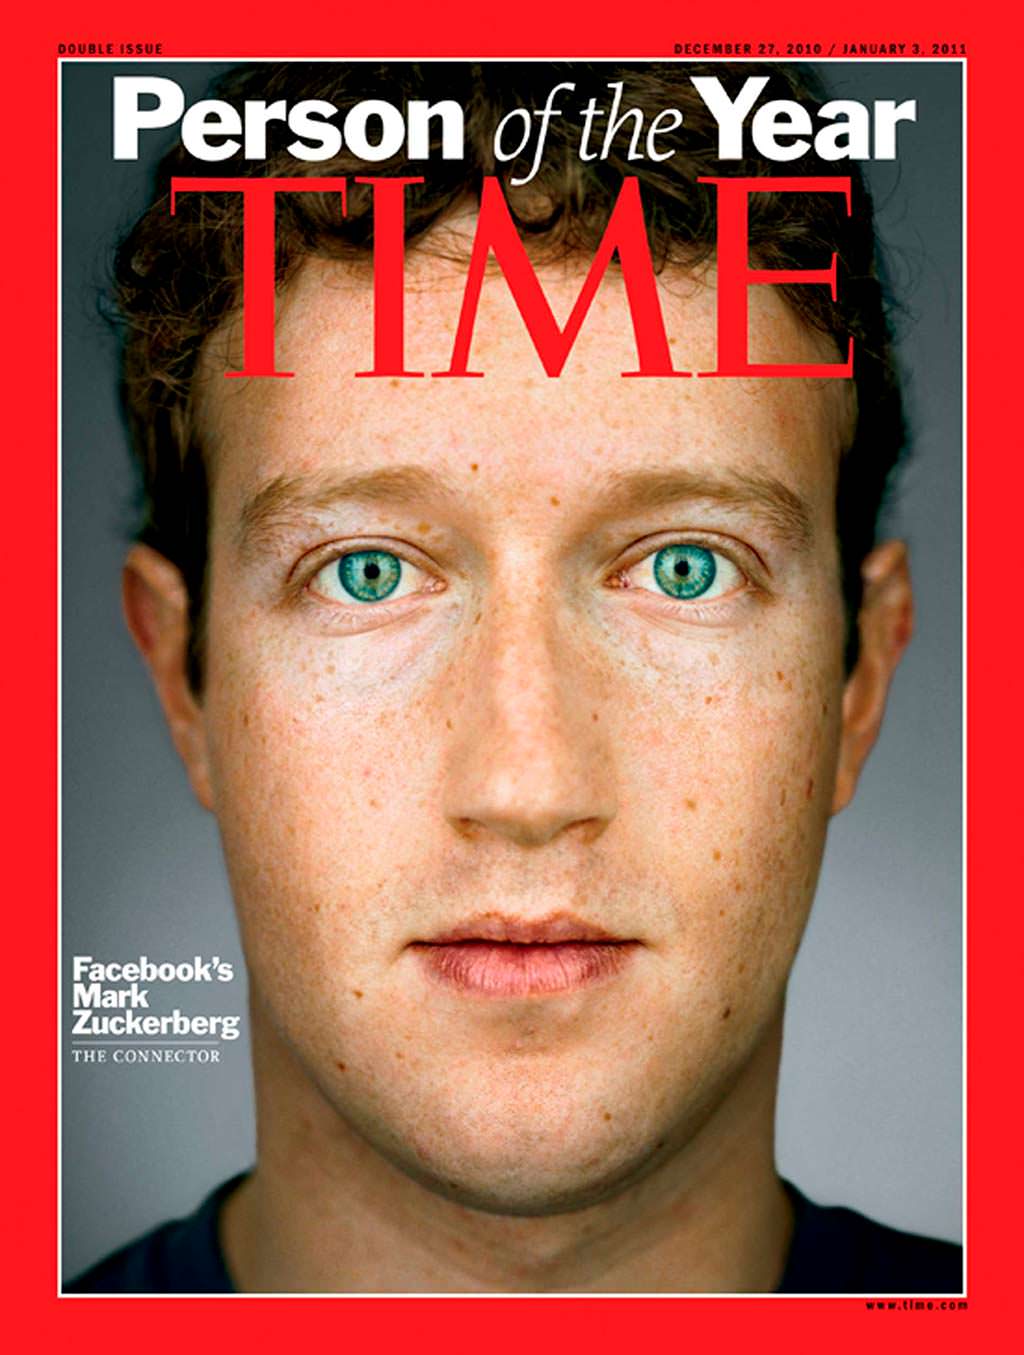 2010 год. Основатель Facebook Марк Цукерберг на обложке Time